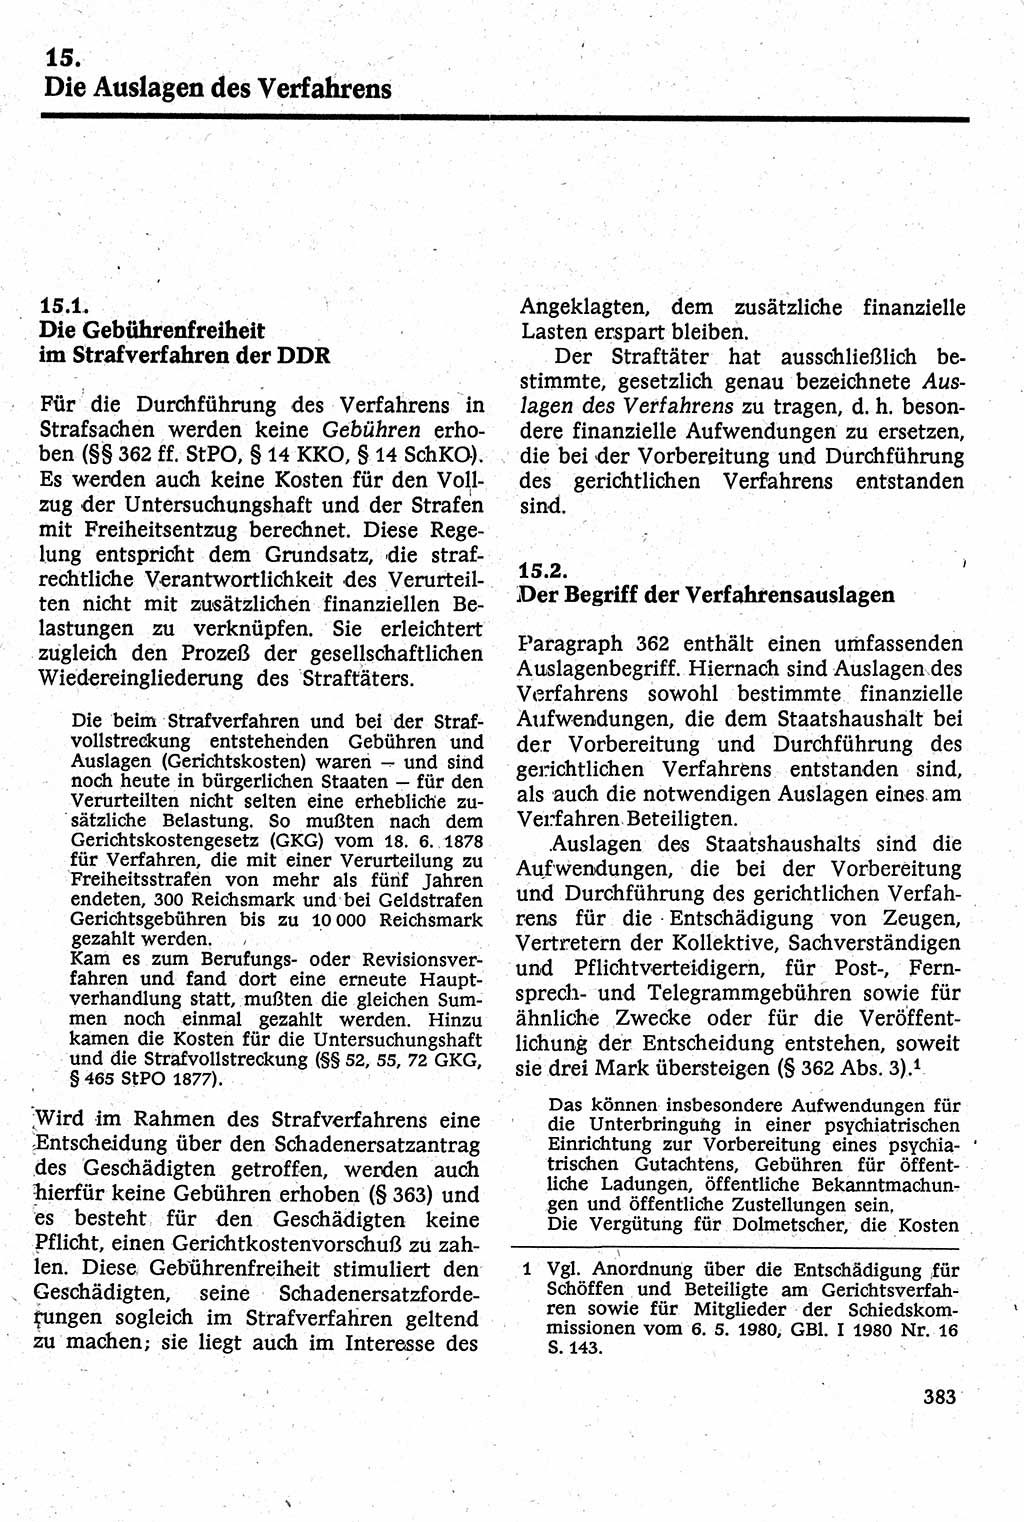 Strafverfahrensrecht [Deutsche Demokratische Republik (DDR)], Lehrbuch 1982, Seite 383 (Strafverf.-R. DDR Lb. 1982, S. 383)